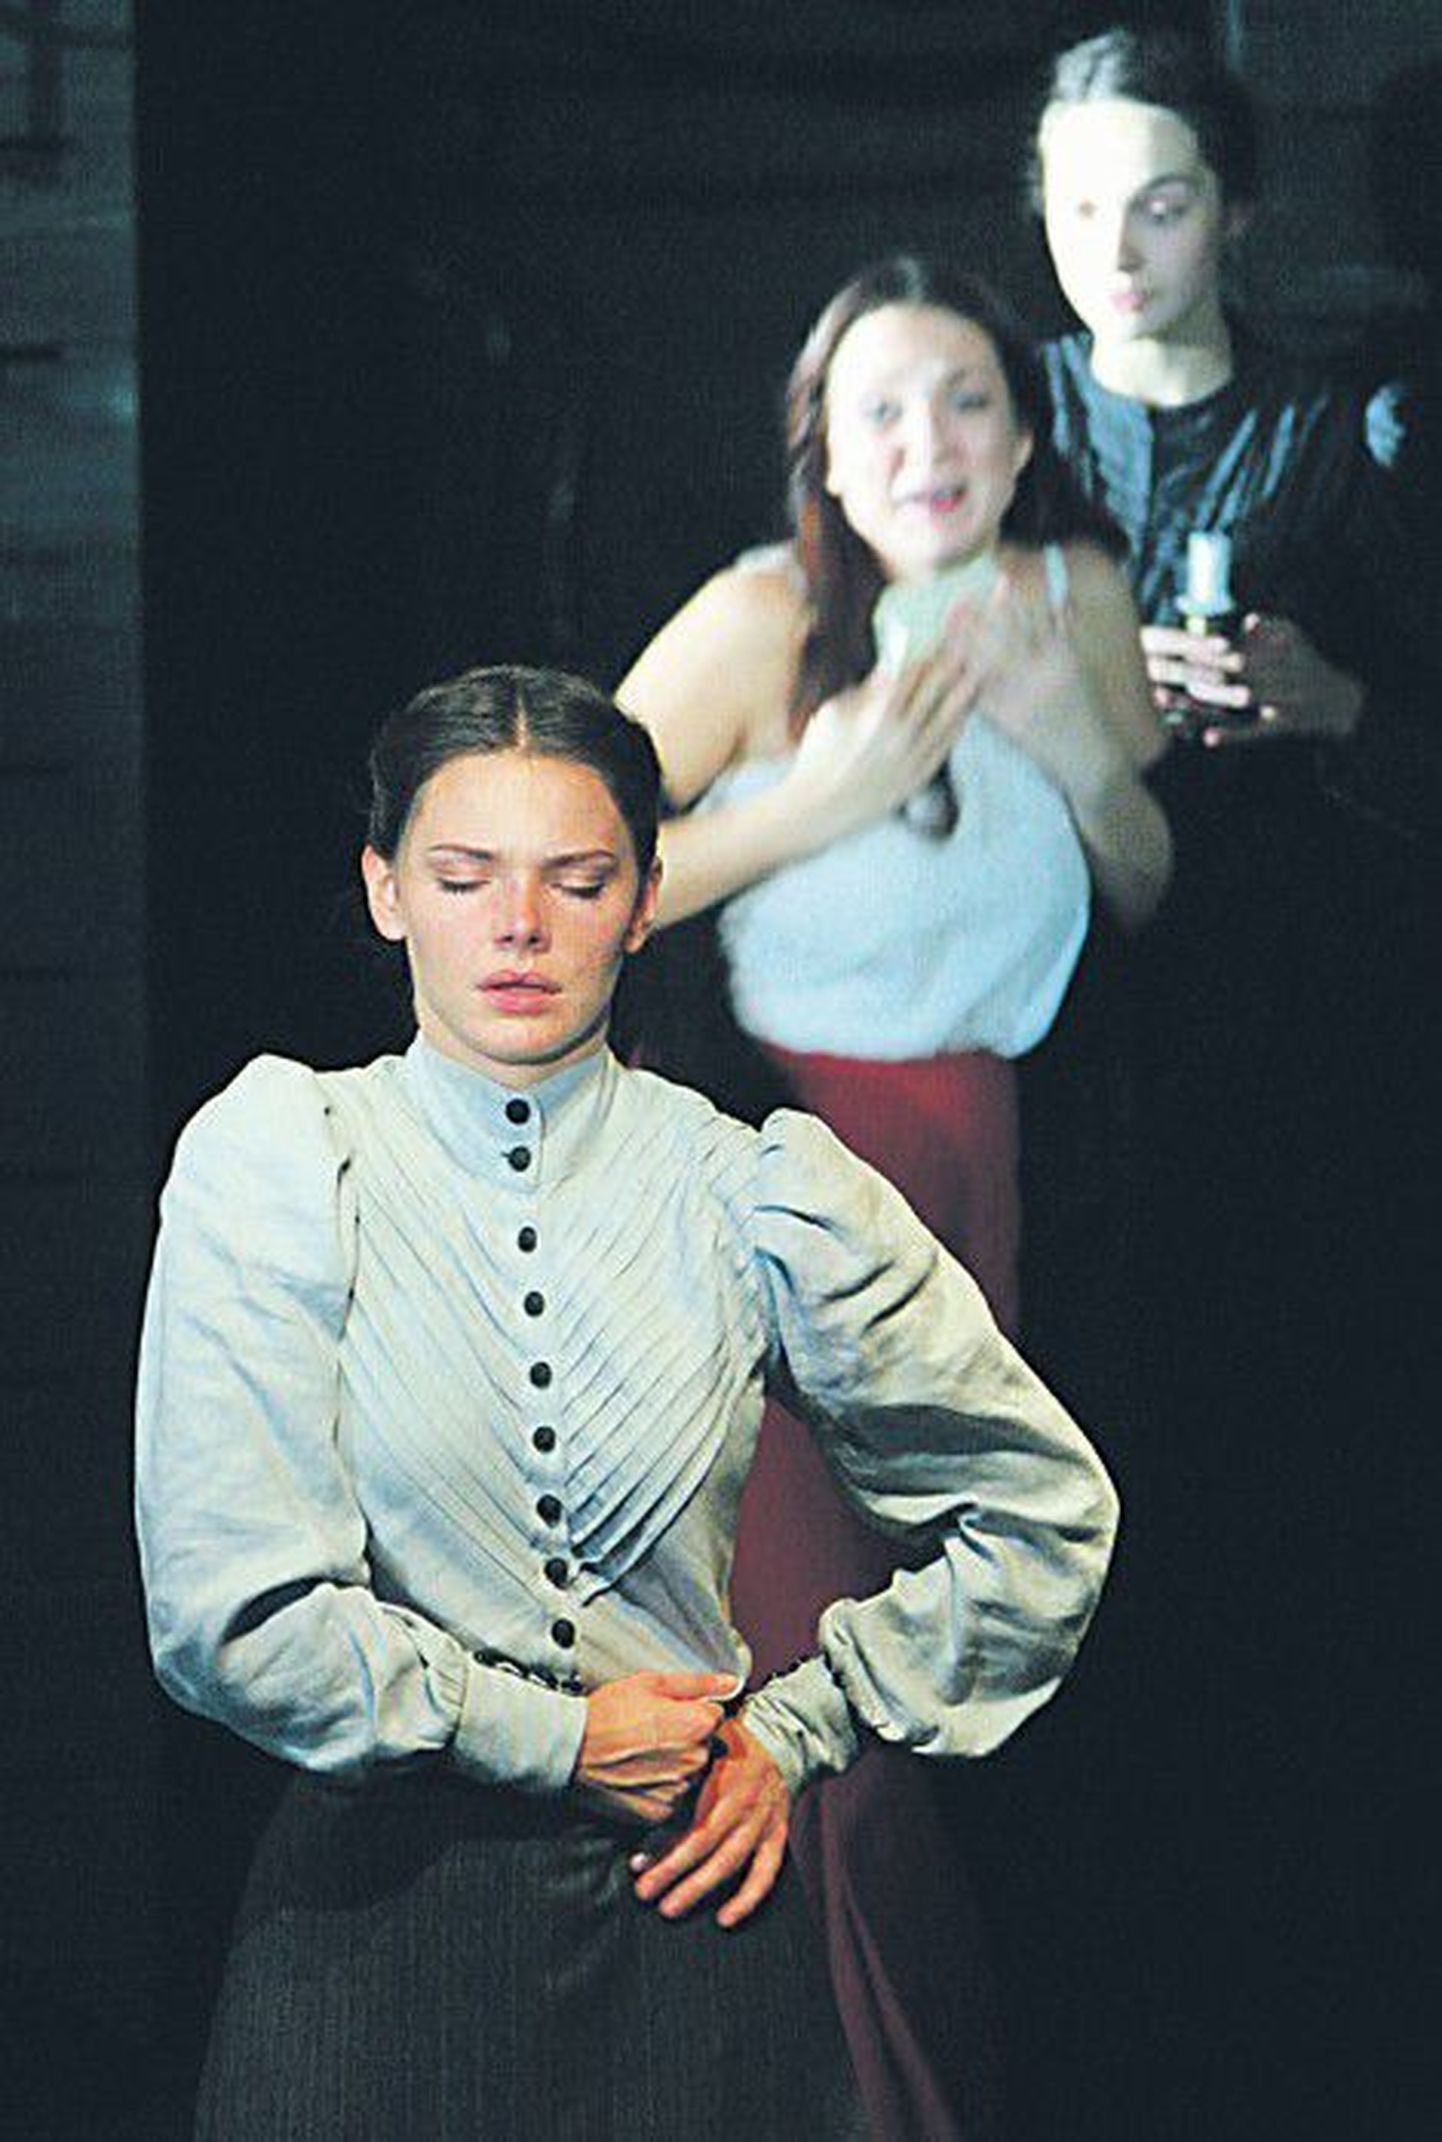 Ирину в «Трех сестрах» в постановке Льва Додина играет Елизавета Боярская — за эту роль она номинирована на «Золотой маске 2012» в категории «Лучшая женская роль».